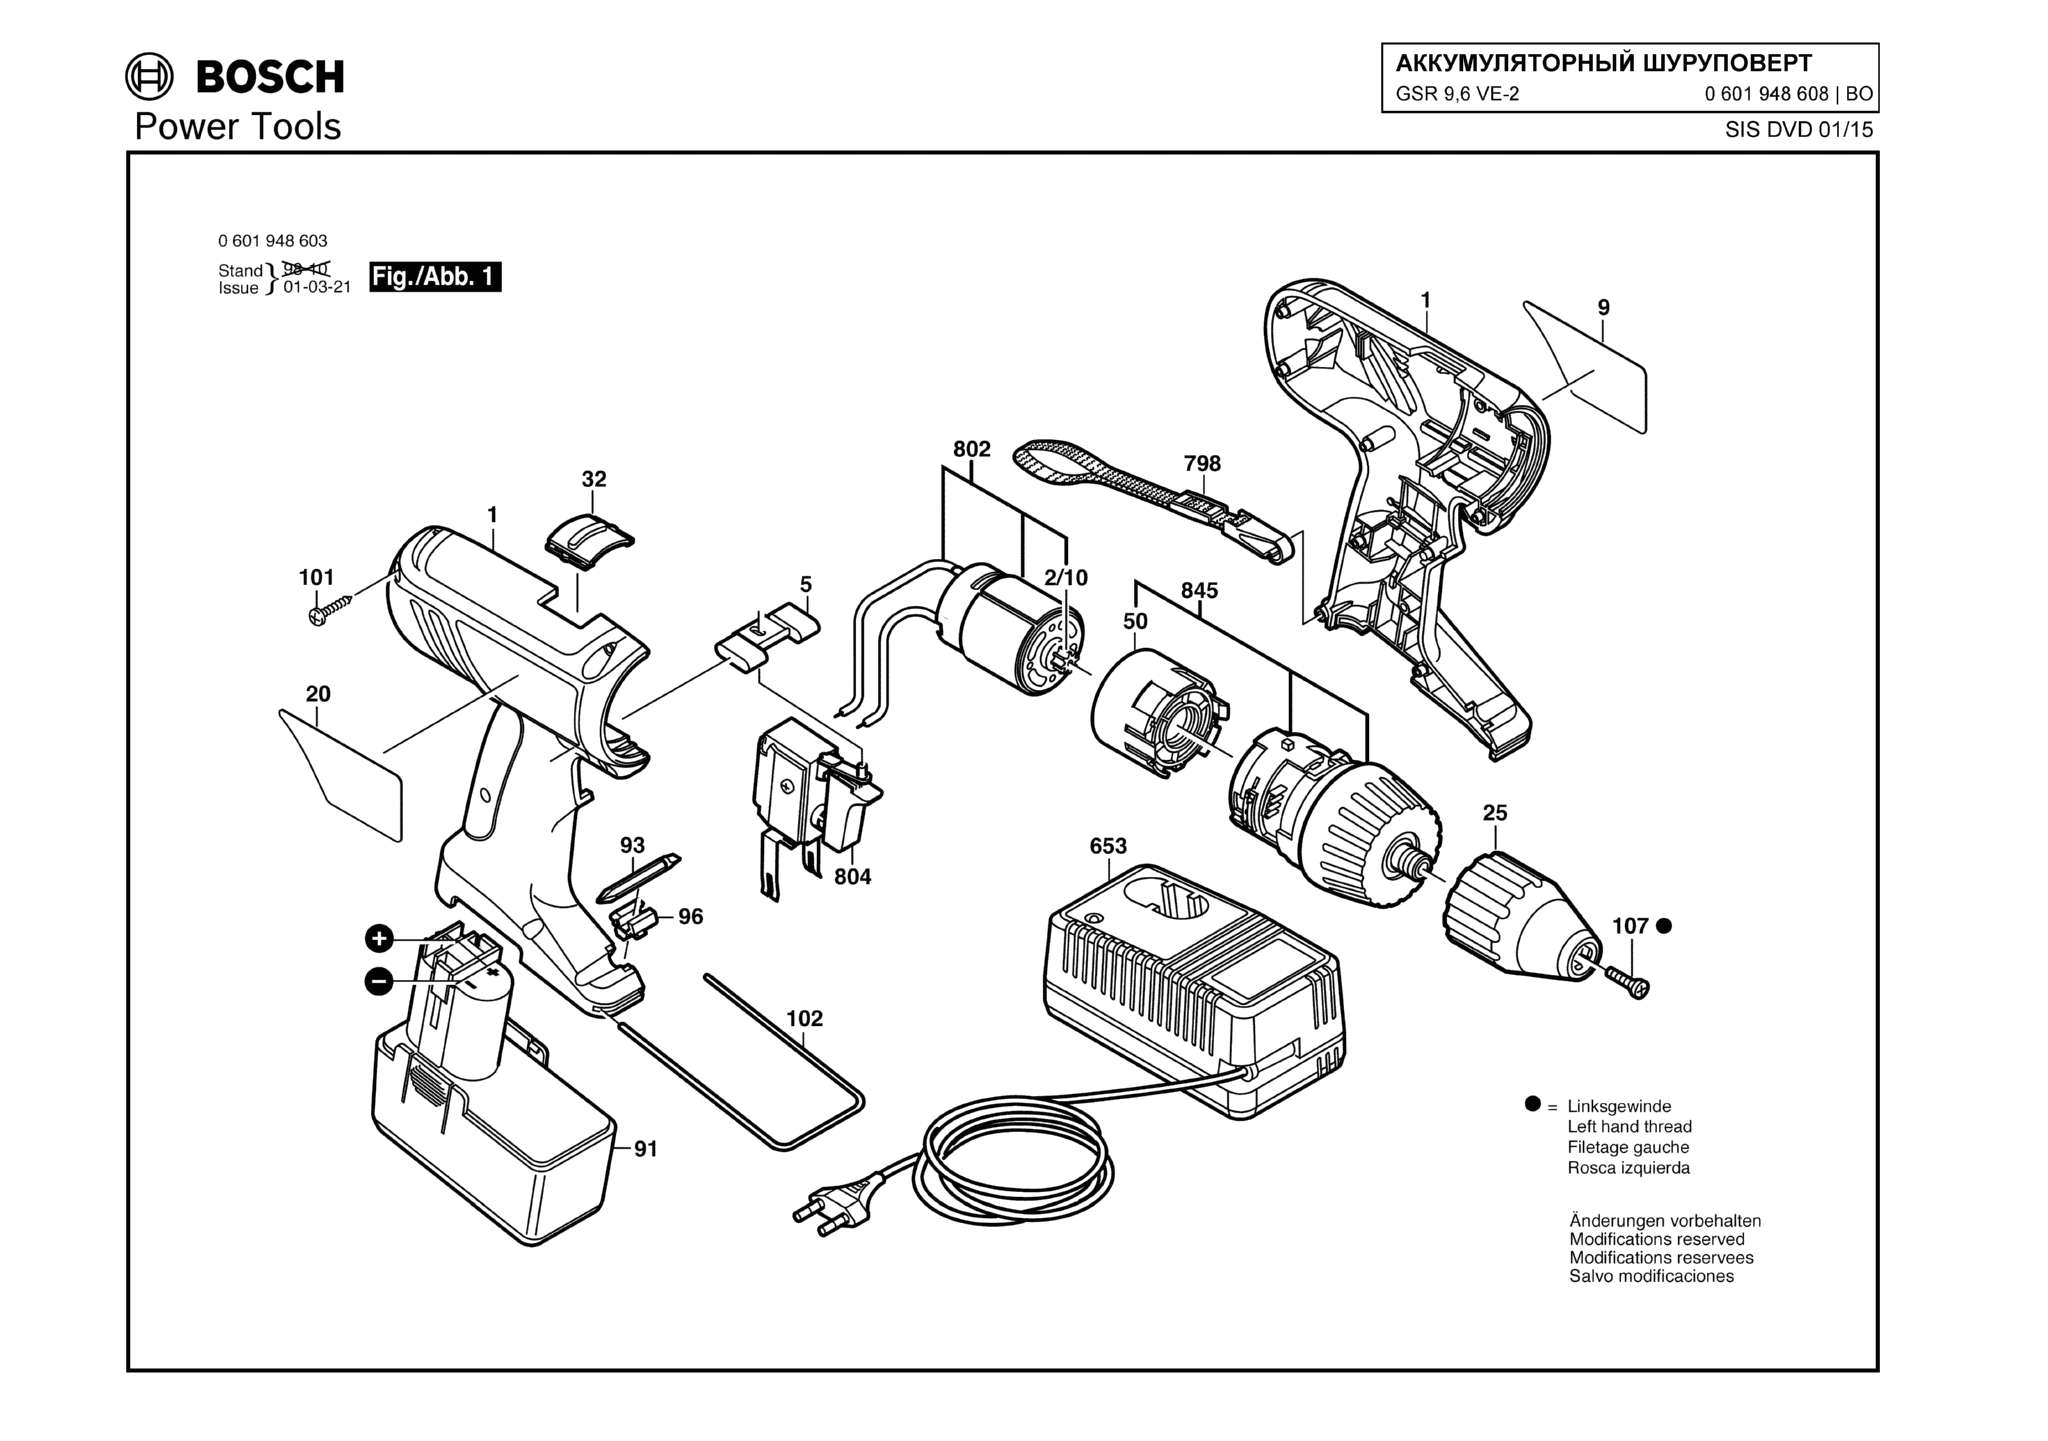 Запчасти, схема и деталировка Bosch GSR 9,6 VE-2 (ТИП 0601948608)